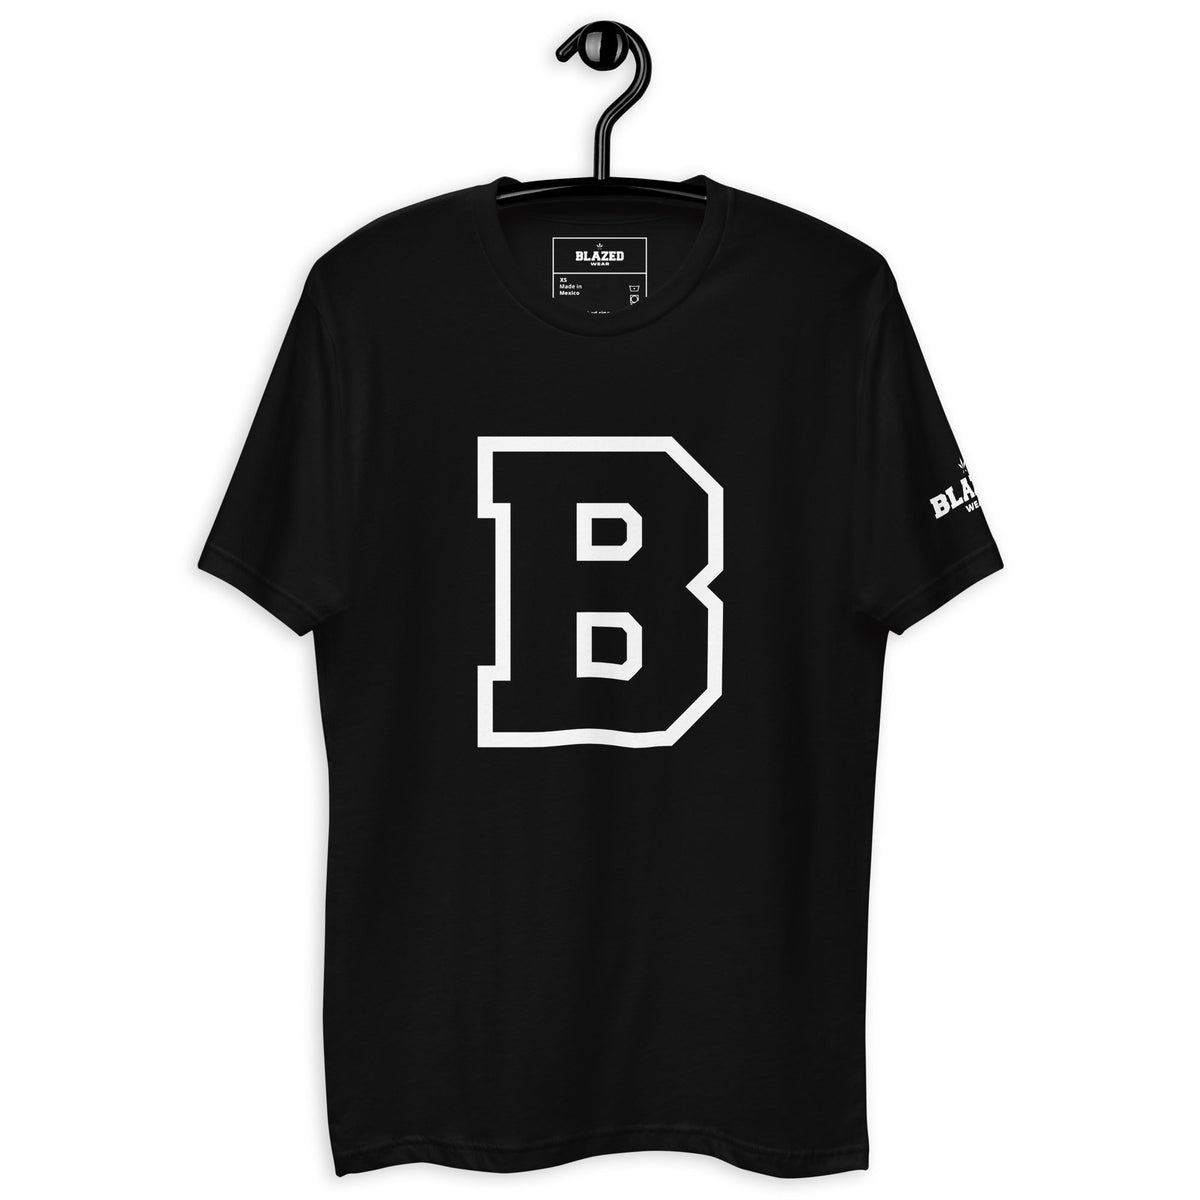 Blazed B Outline Tee - Black - Blazed Wear